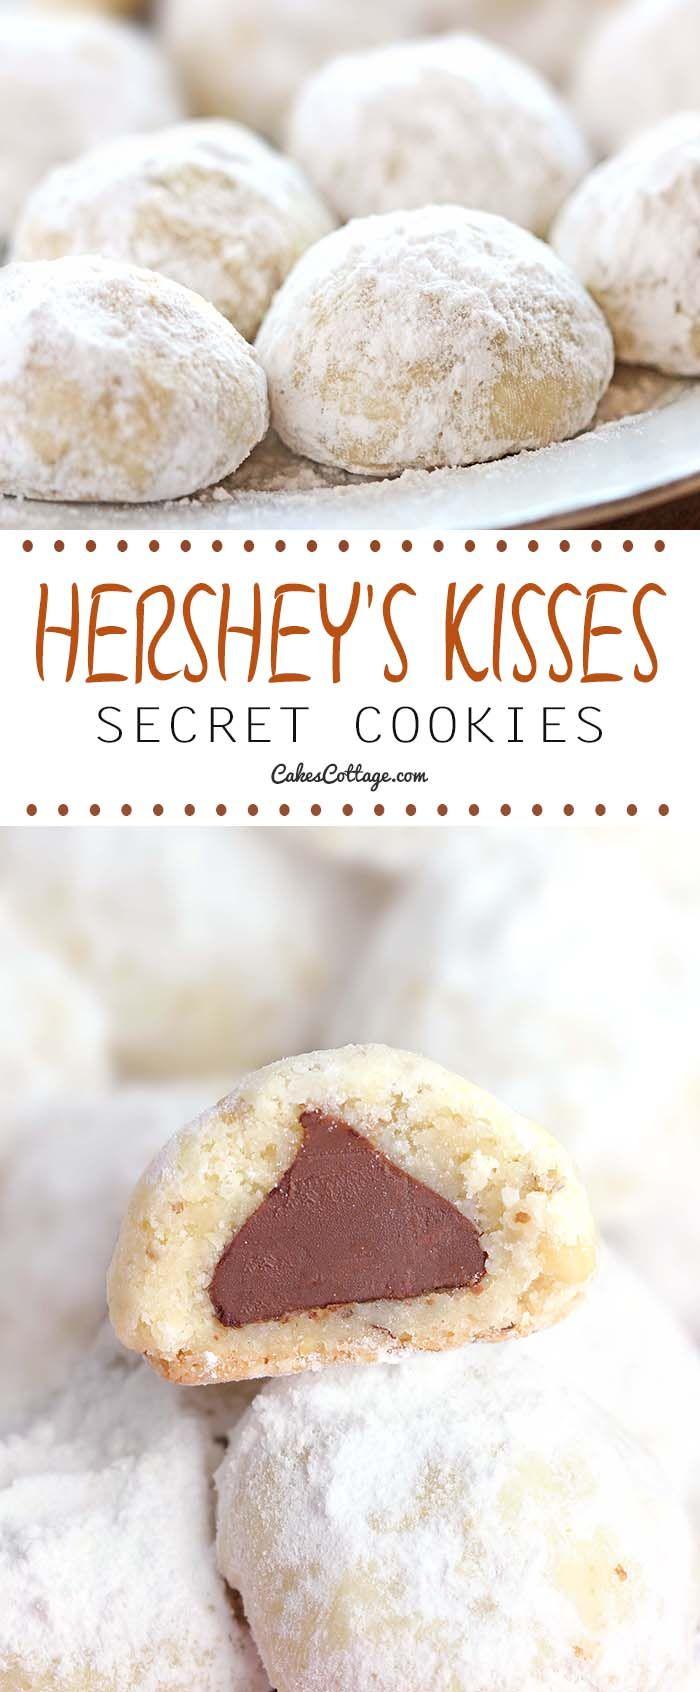 Hochzeit - Hershey's Secret Kisses Cookies